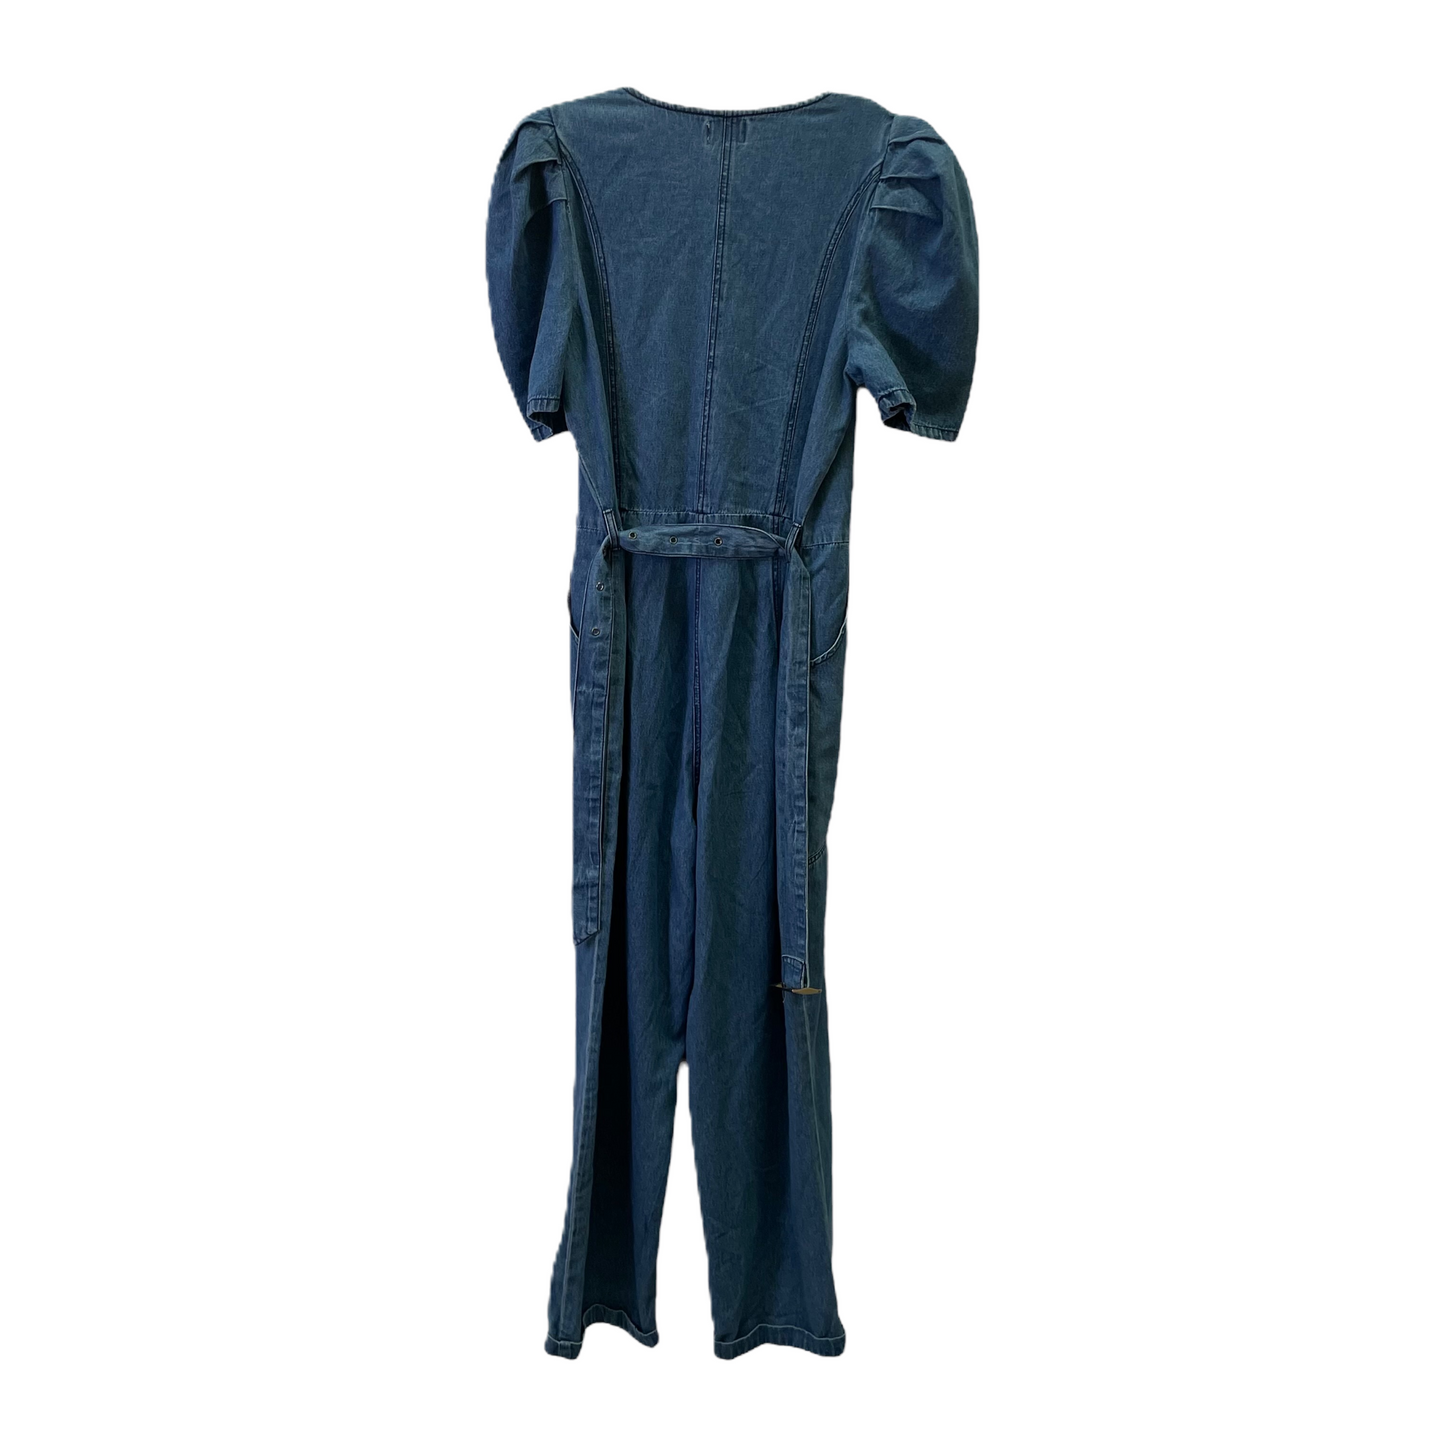 Blue Jumpsuit By Jessica Simpson, Size: Xl